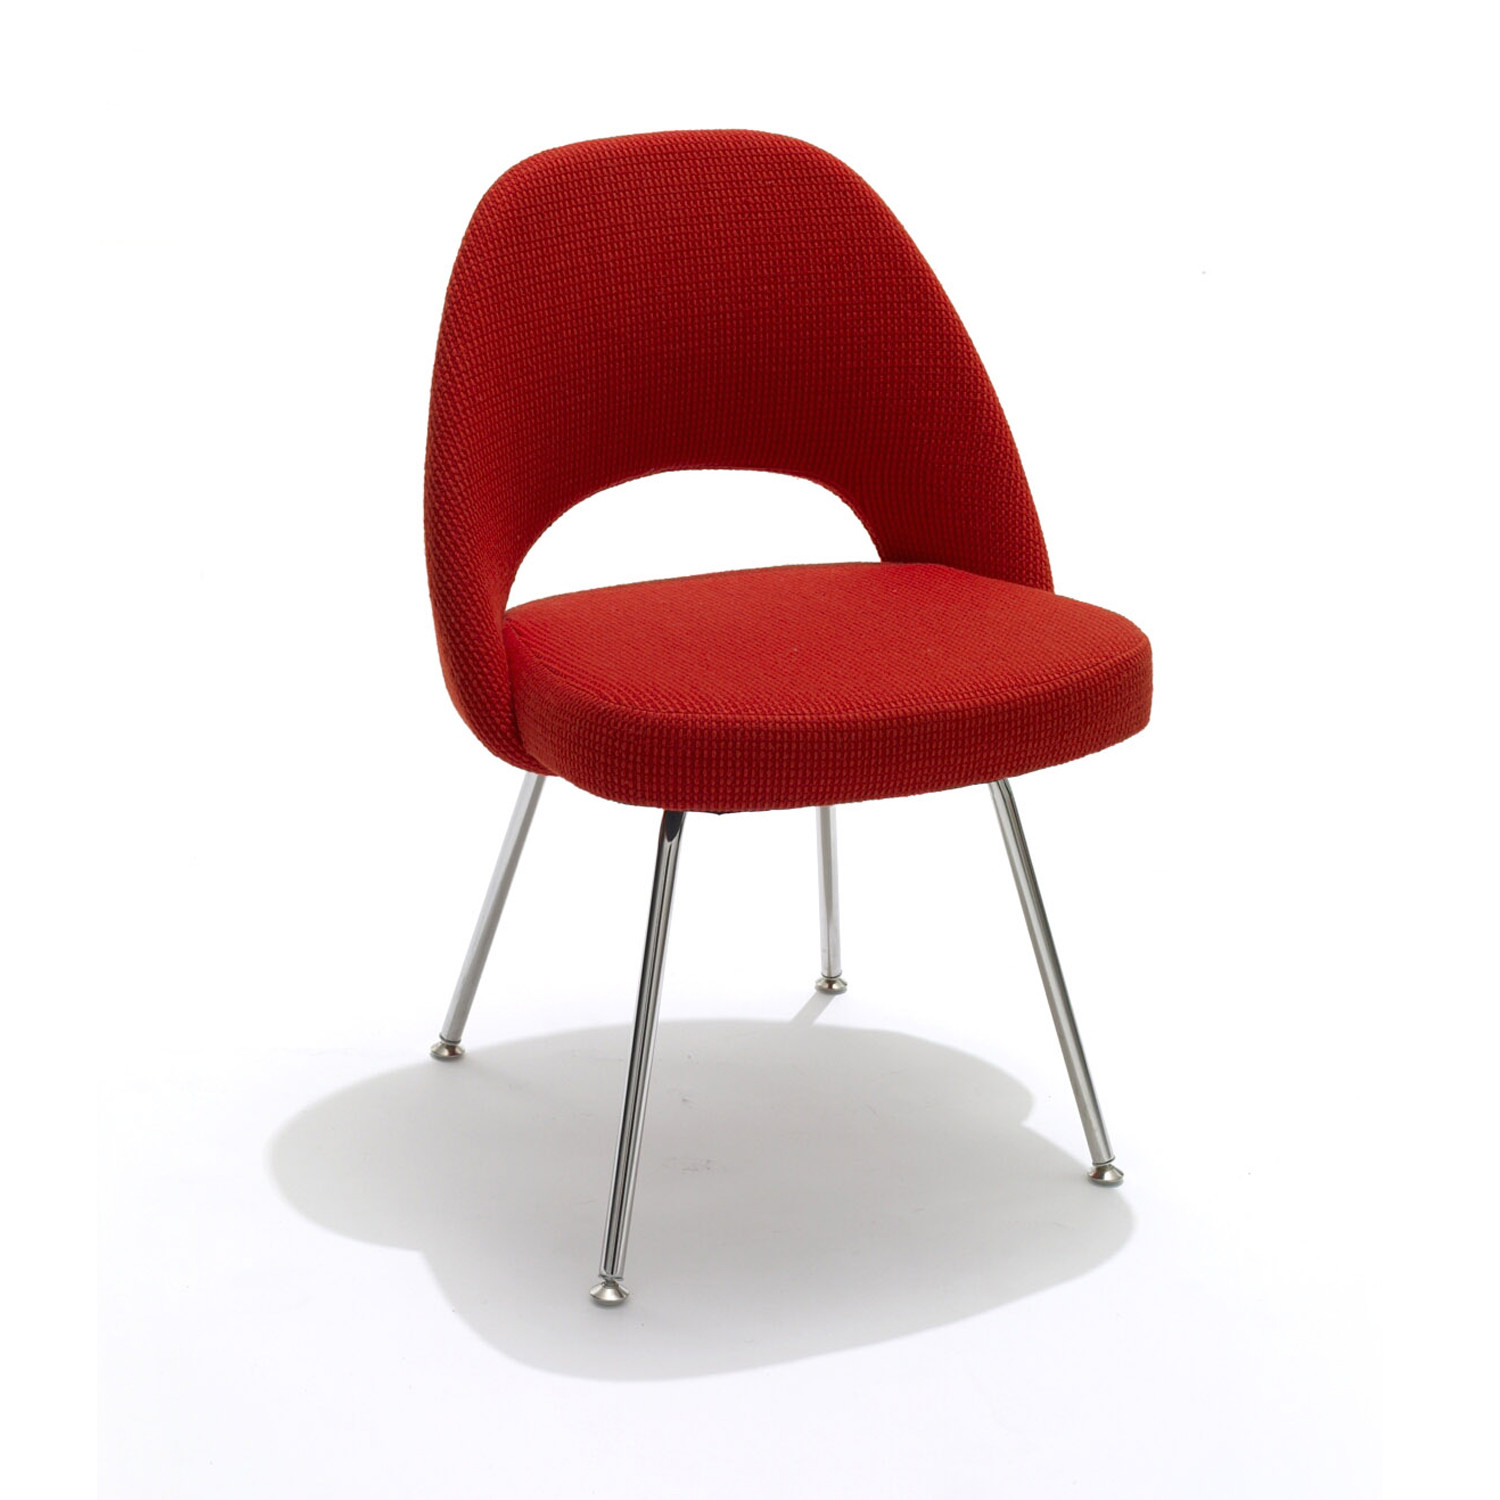 Saarinen Chairs - Steel